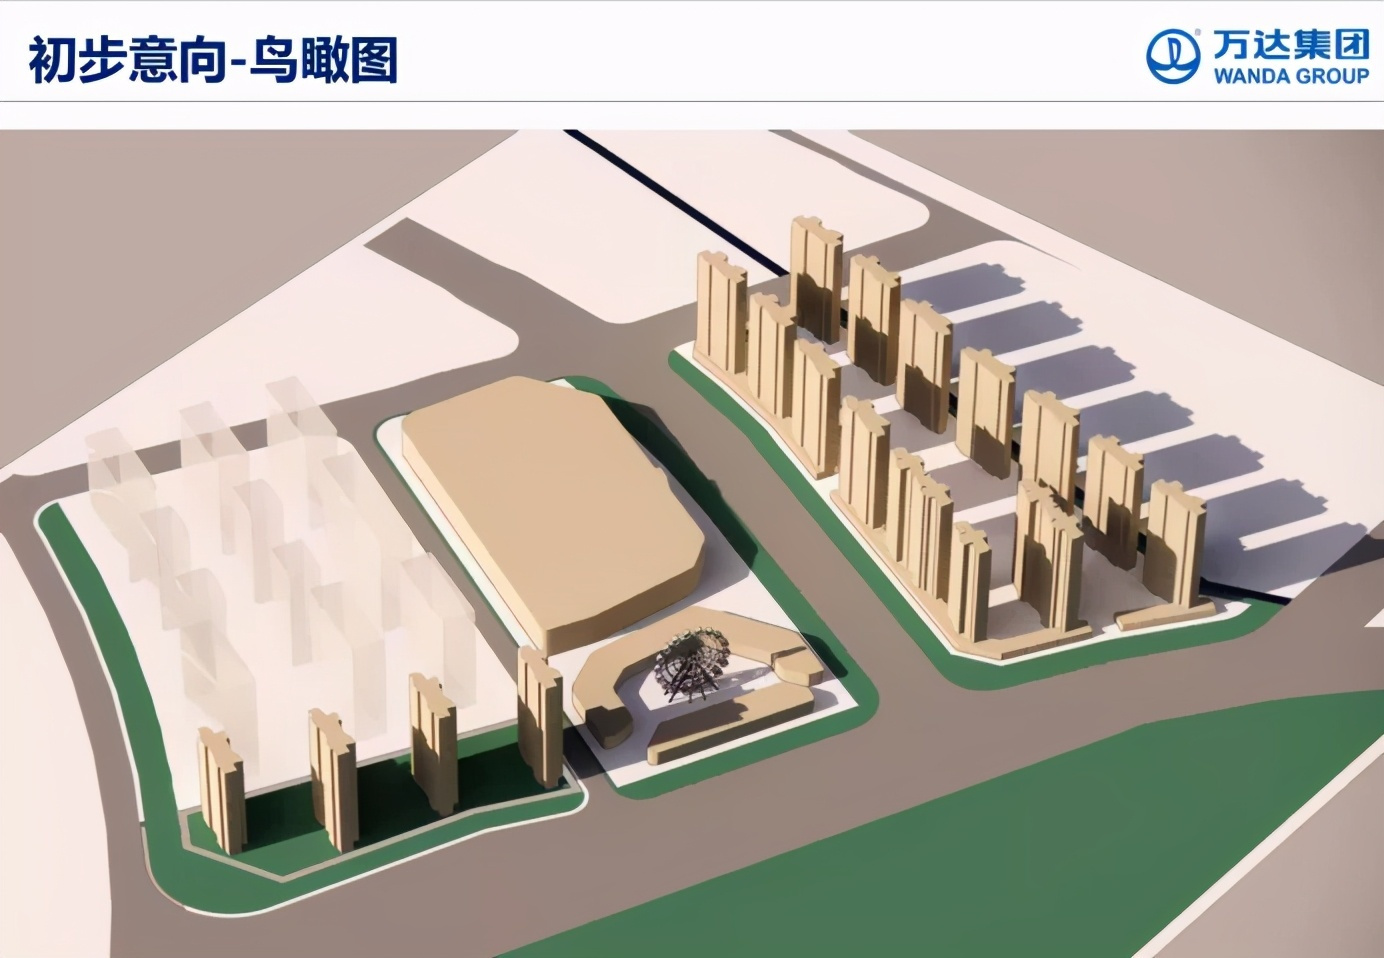 又一座万达广场要来温州了？疑似规划图曝光！就在市区这个地方……